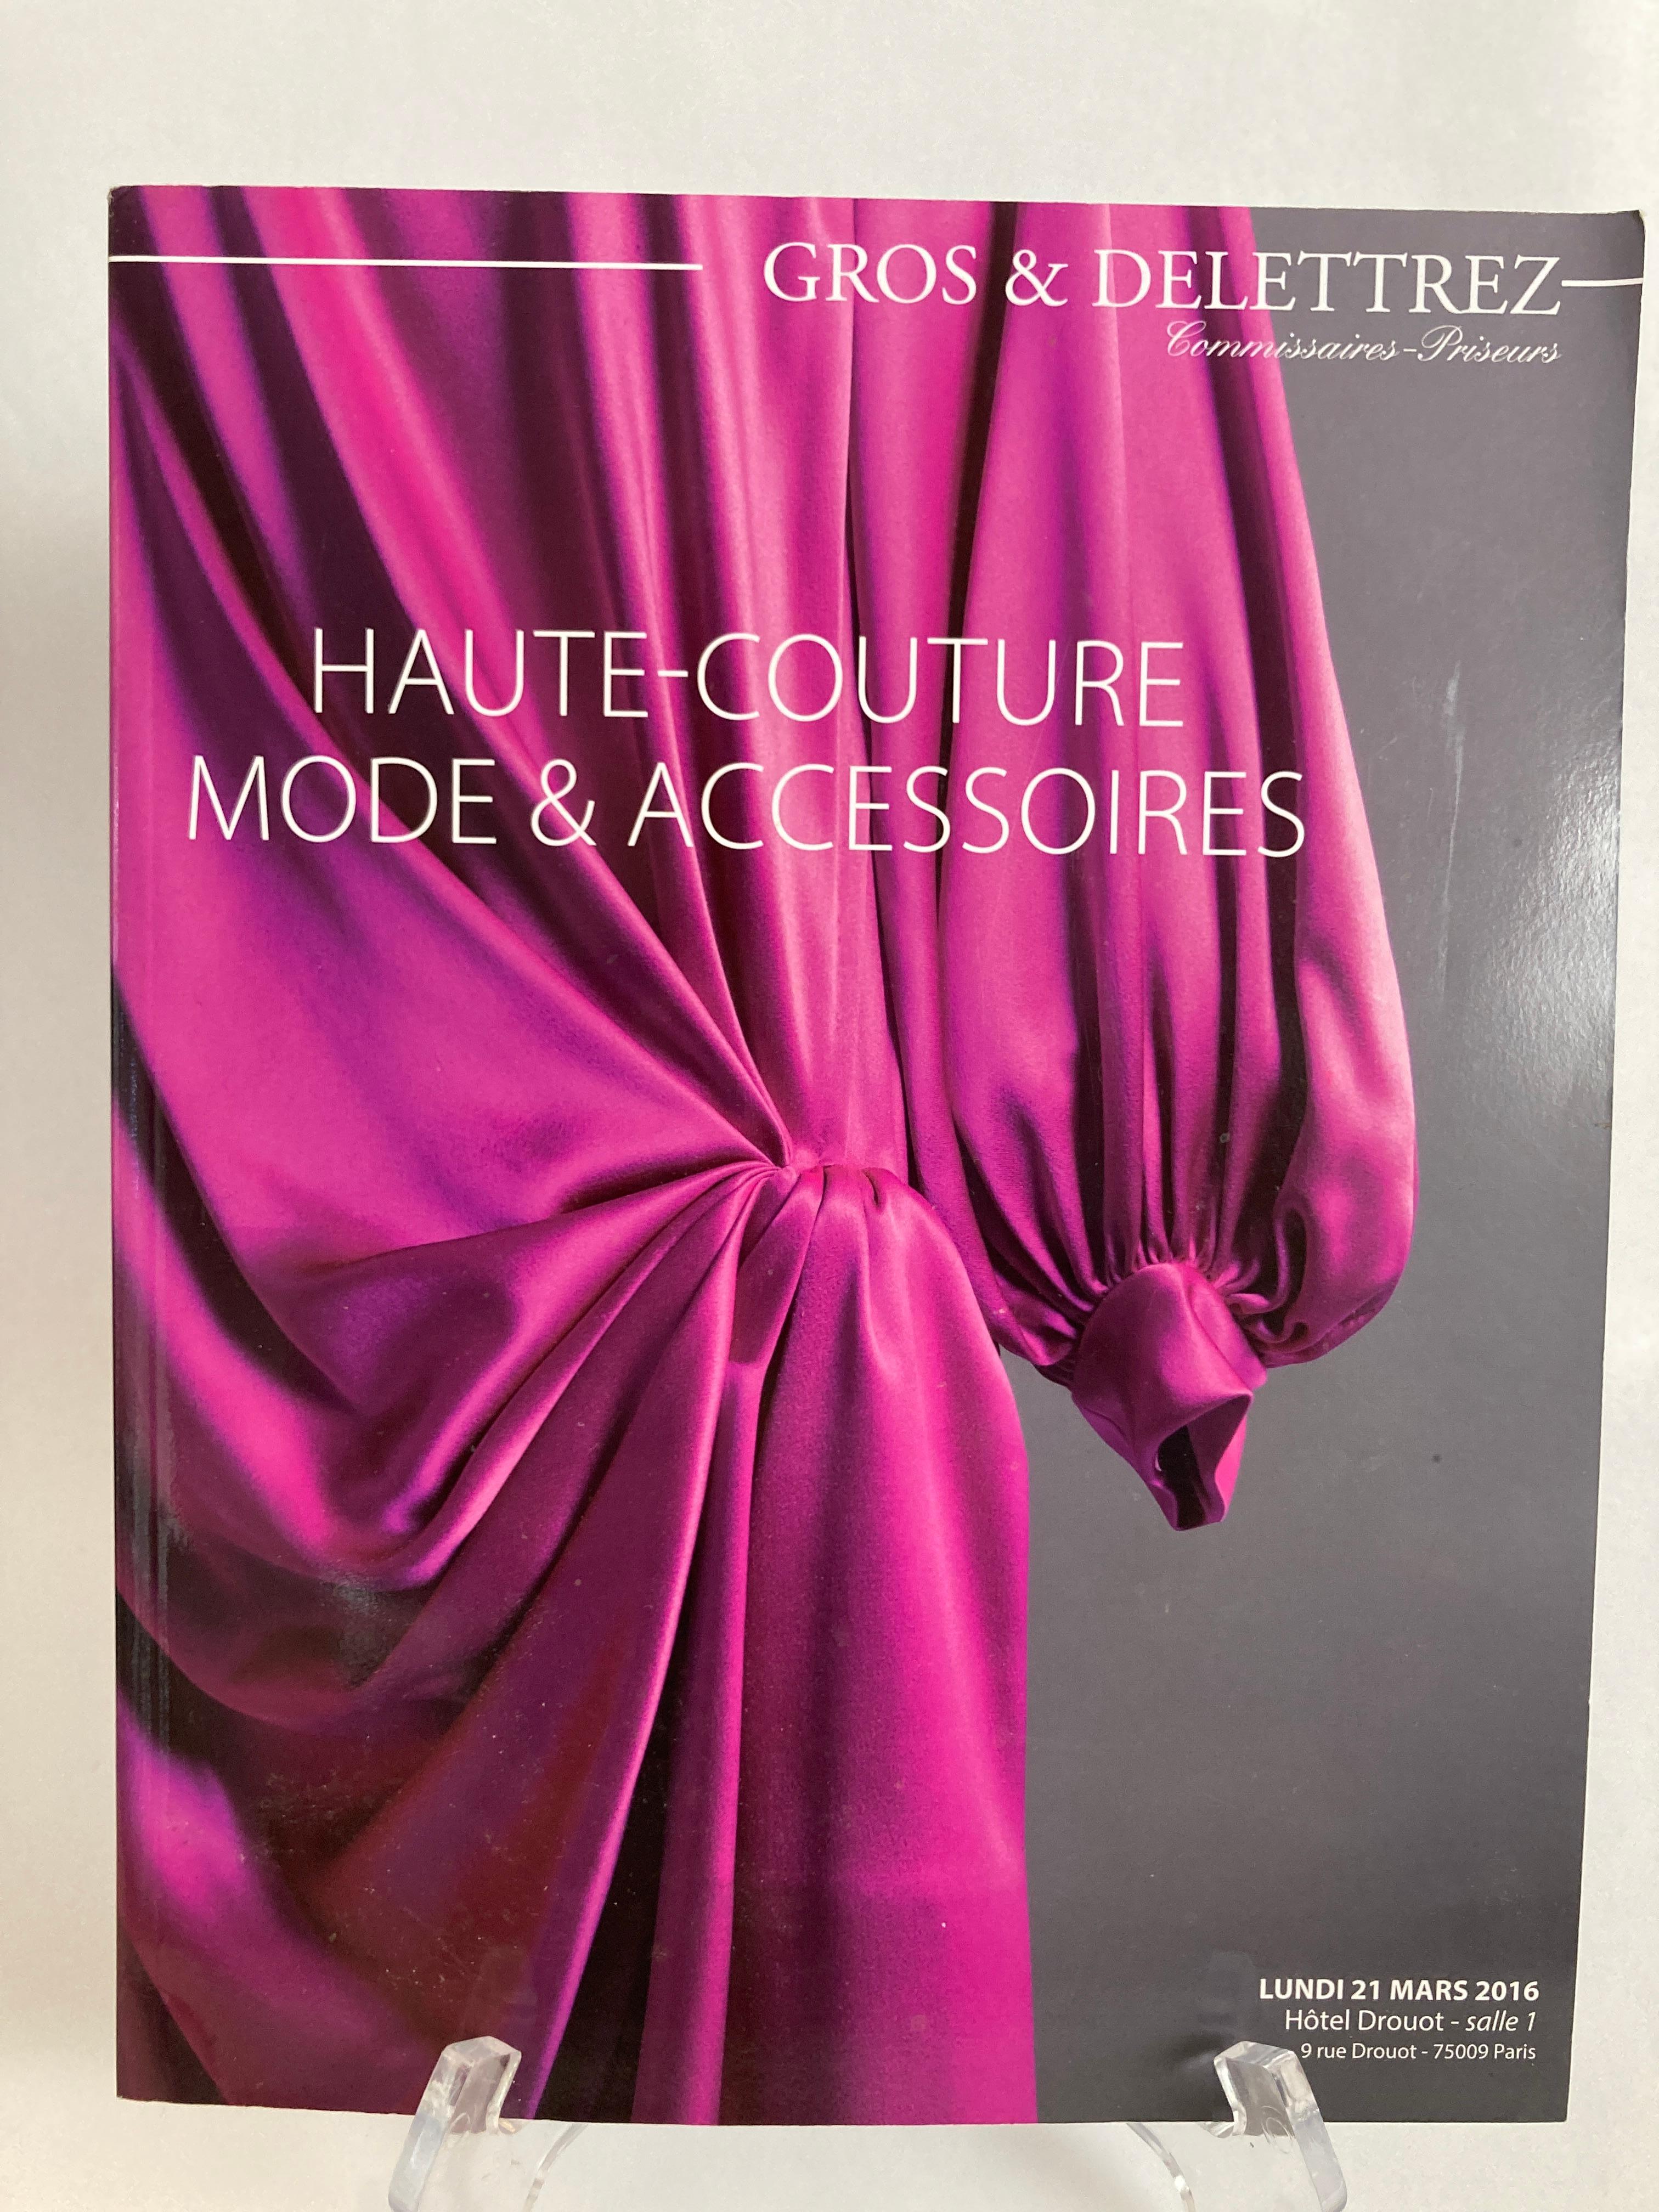 Paris Haute Couture Auction Catalog 2016 Published by Gros & Delettrez,
Haute Couture Mode et Accessoires Paris Auction Catalog 2016.
Published by Gros & Delettrez, 2016.
Title: Haute Couture Mode et Accessoires Paris Auction Catalog 2016.
Binding: